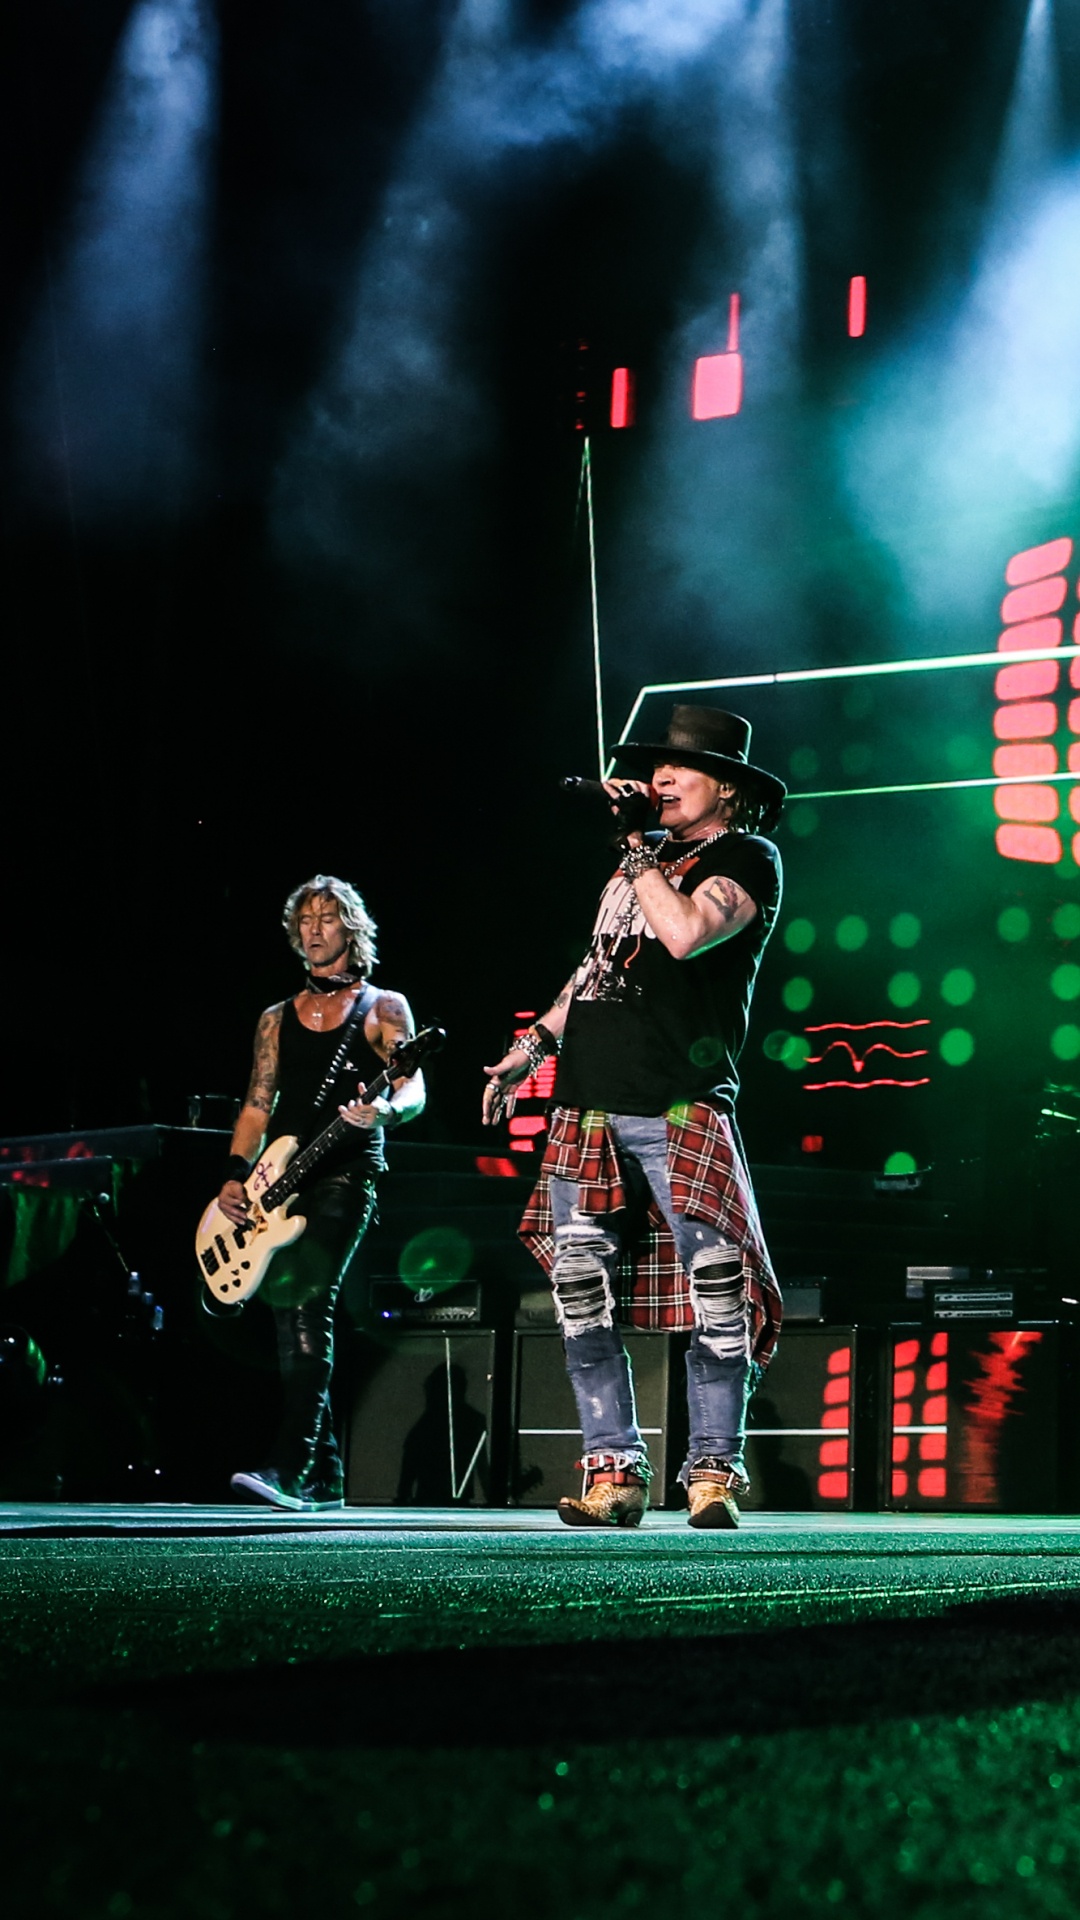 Pas Dans Cette Vie en Tournée, Guns N Roses, Concert de Rock, Performance, Divertissement. Wallpaper in 1080x1920 Resolution